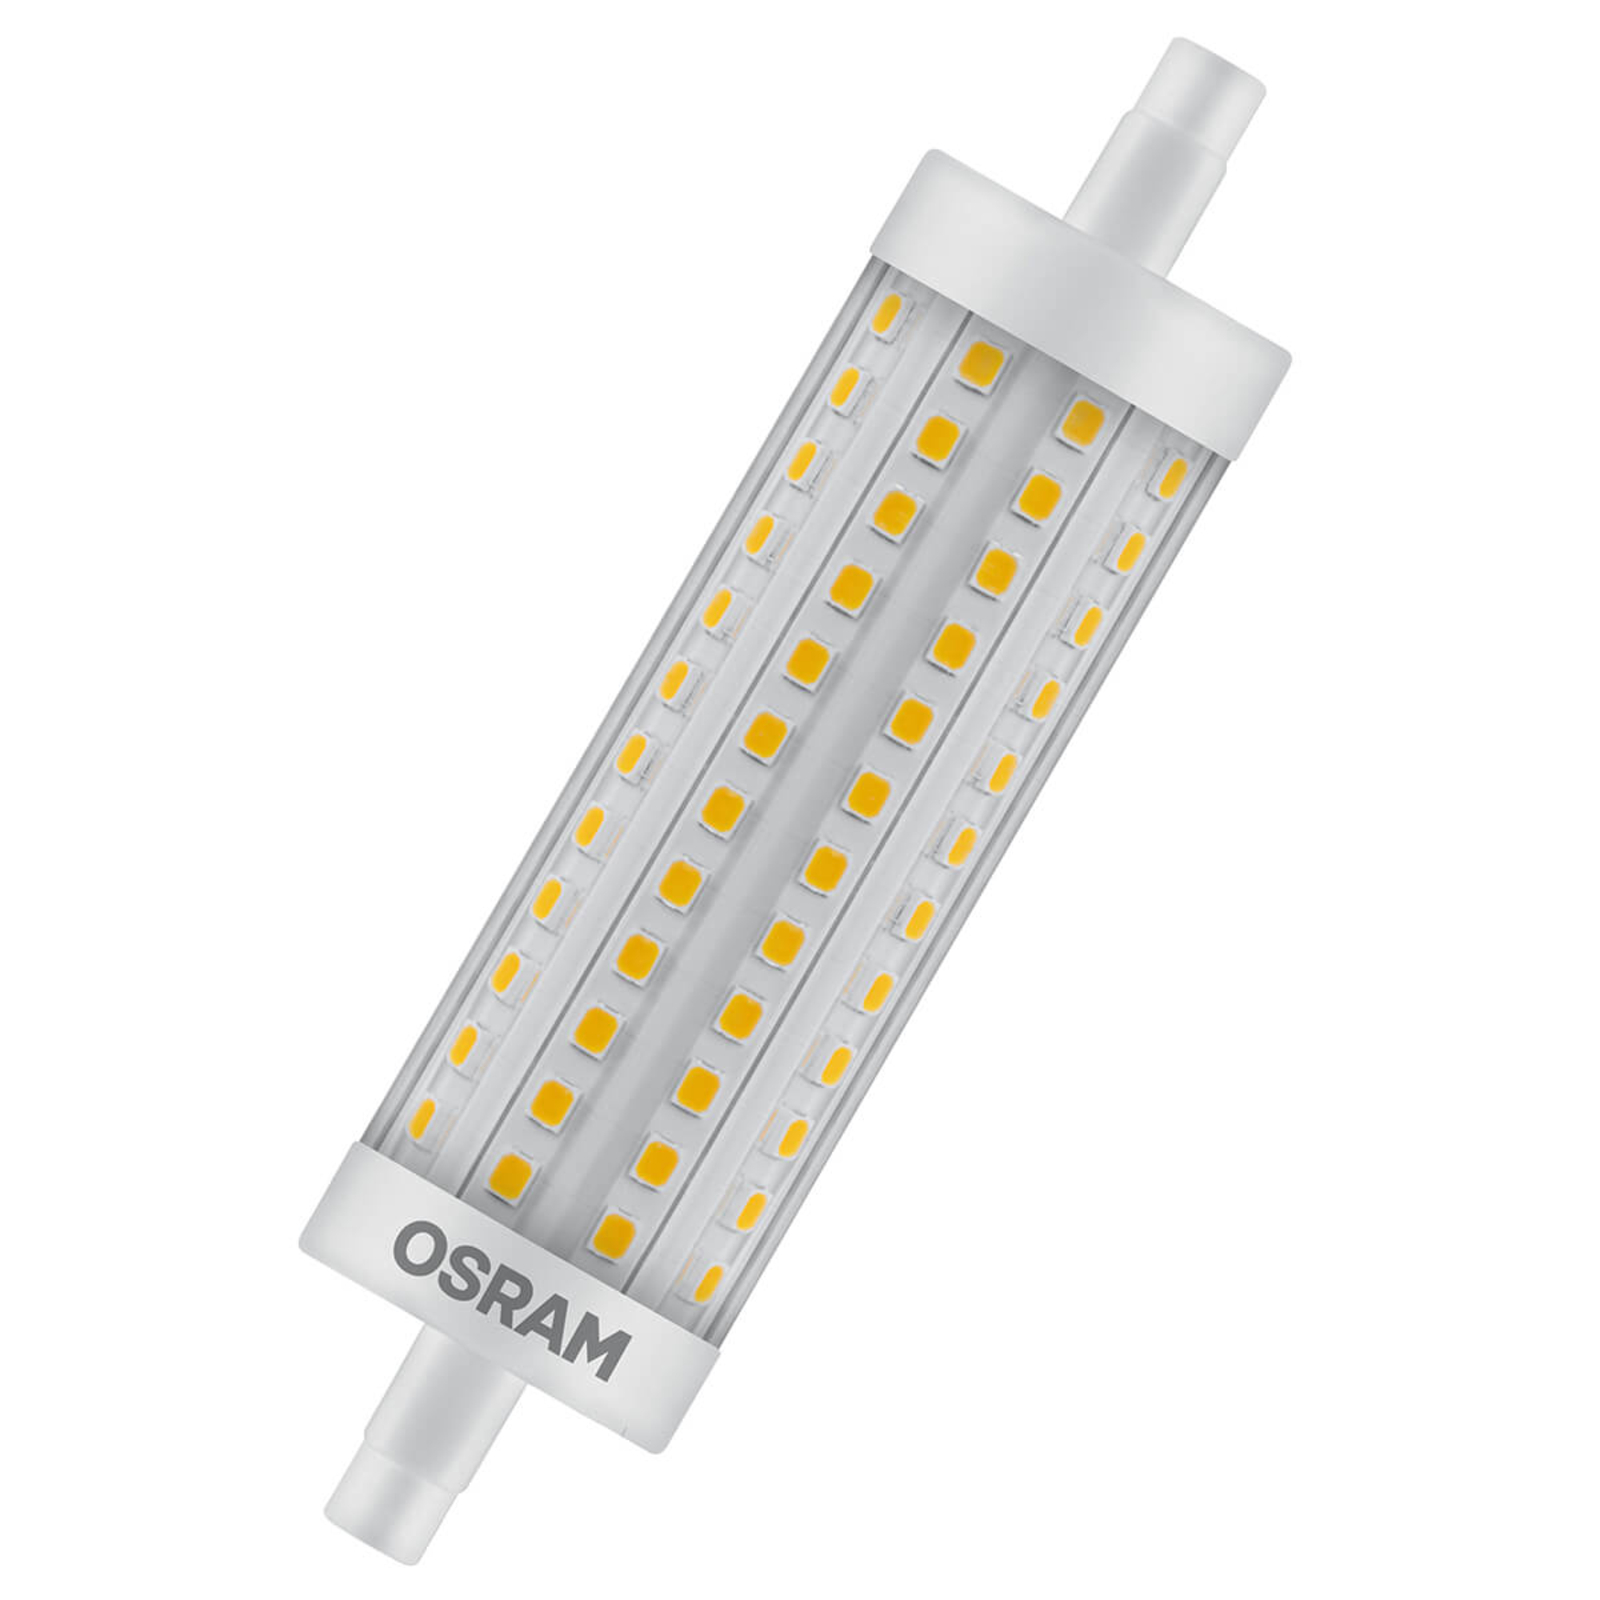 OSRAM LED tyč žárovka R7s 15W 11,8cm 827 stmívací